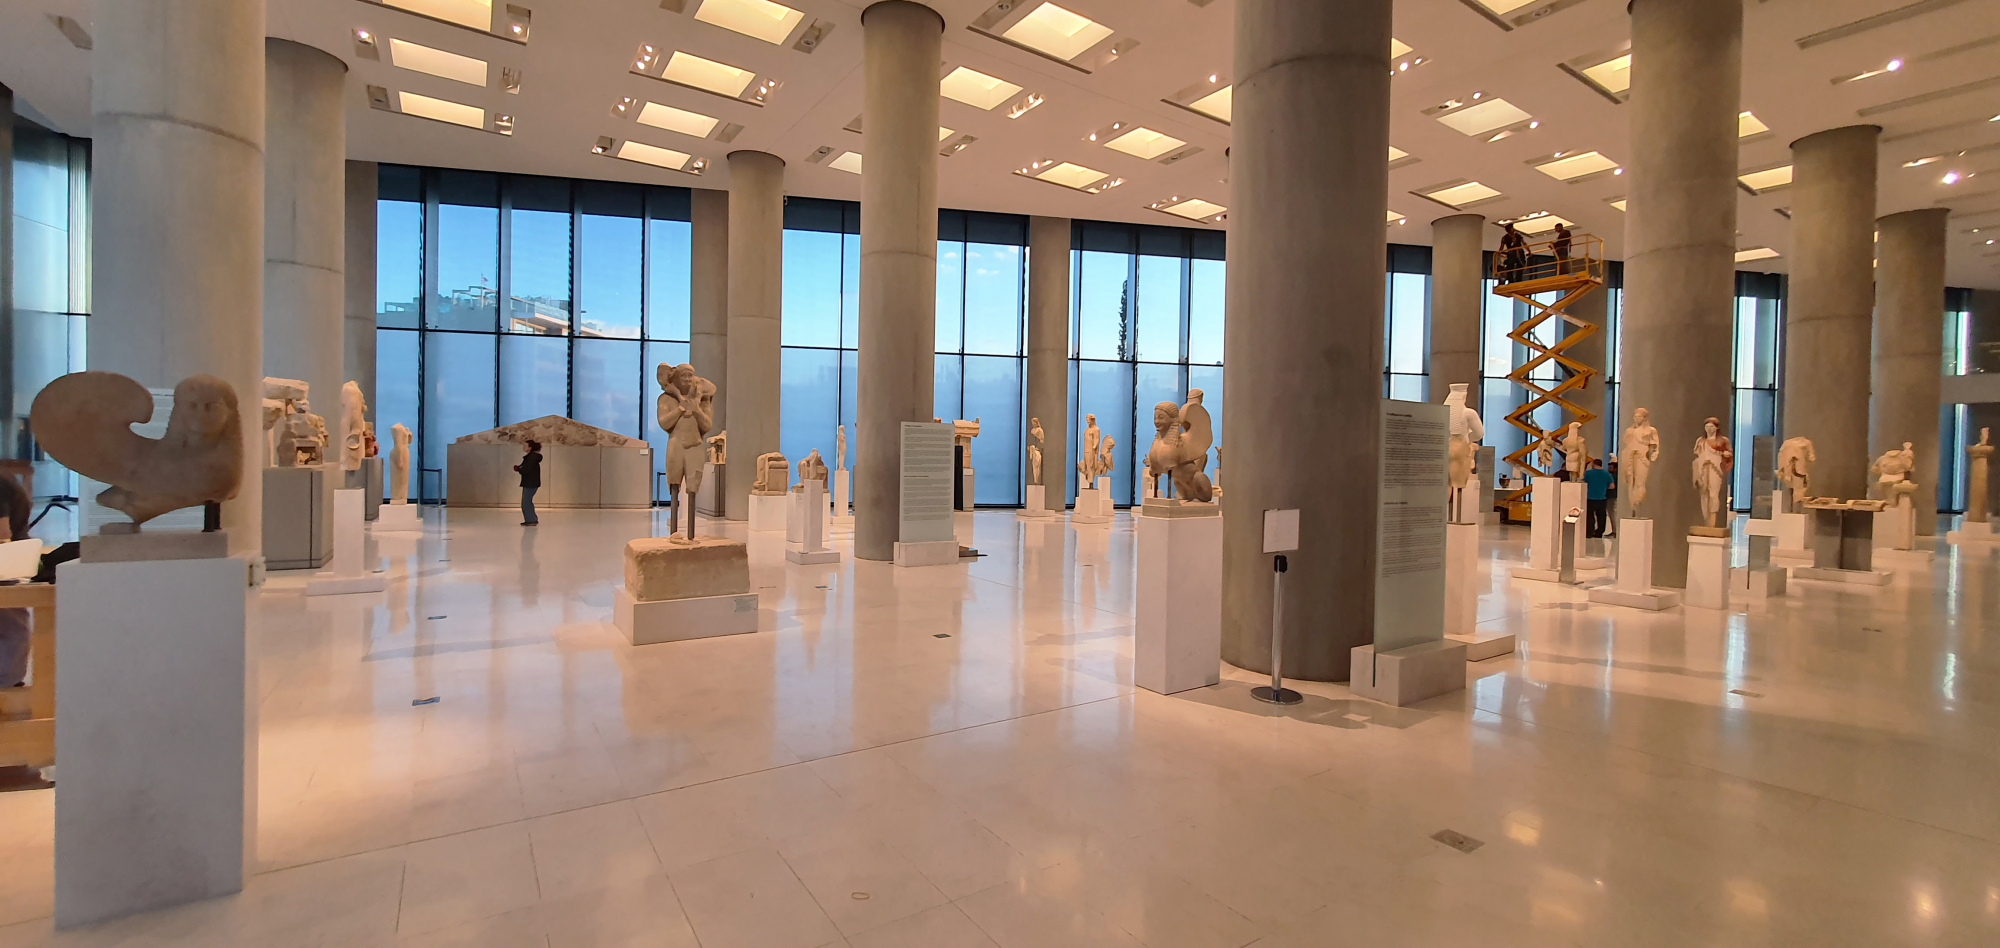 Μουσείο Ακρόπολης: Συμπλήρωσε 14 χρόνια λειτουργίας - Τα πεπραγμένα